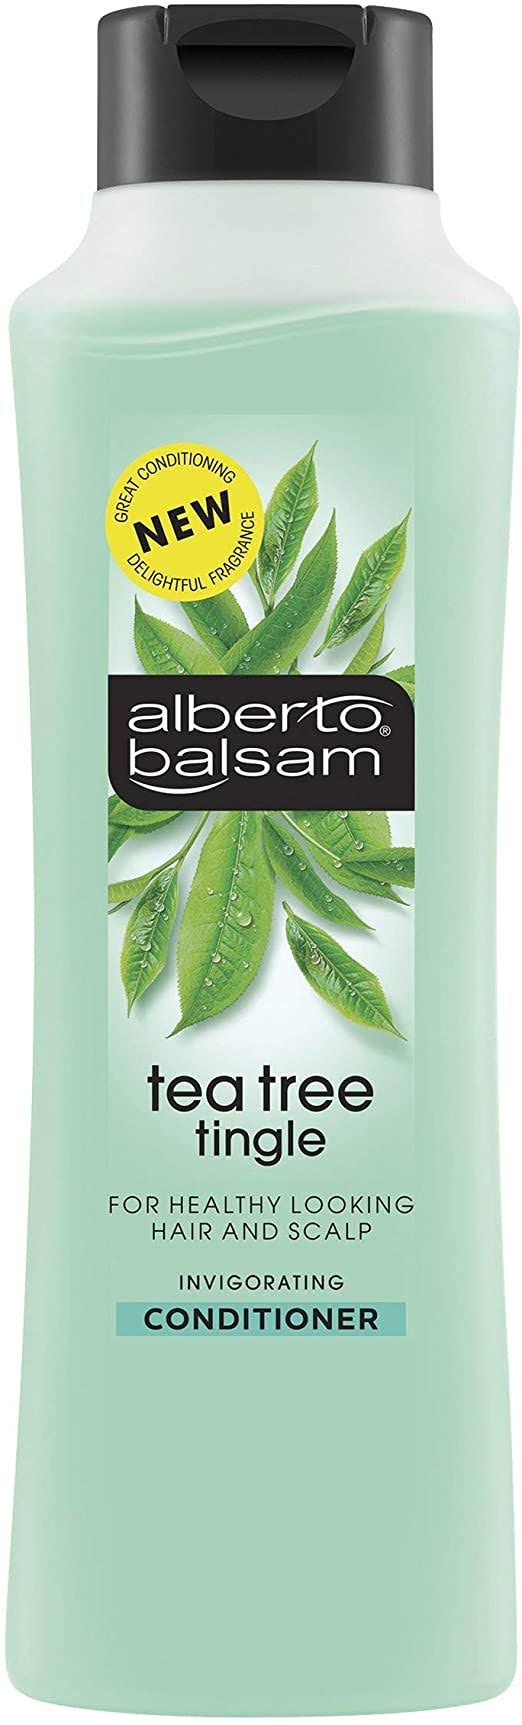 Alberto Balsam Conditioner - Tea Tree Tingle, 350ml